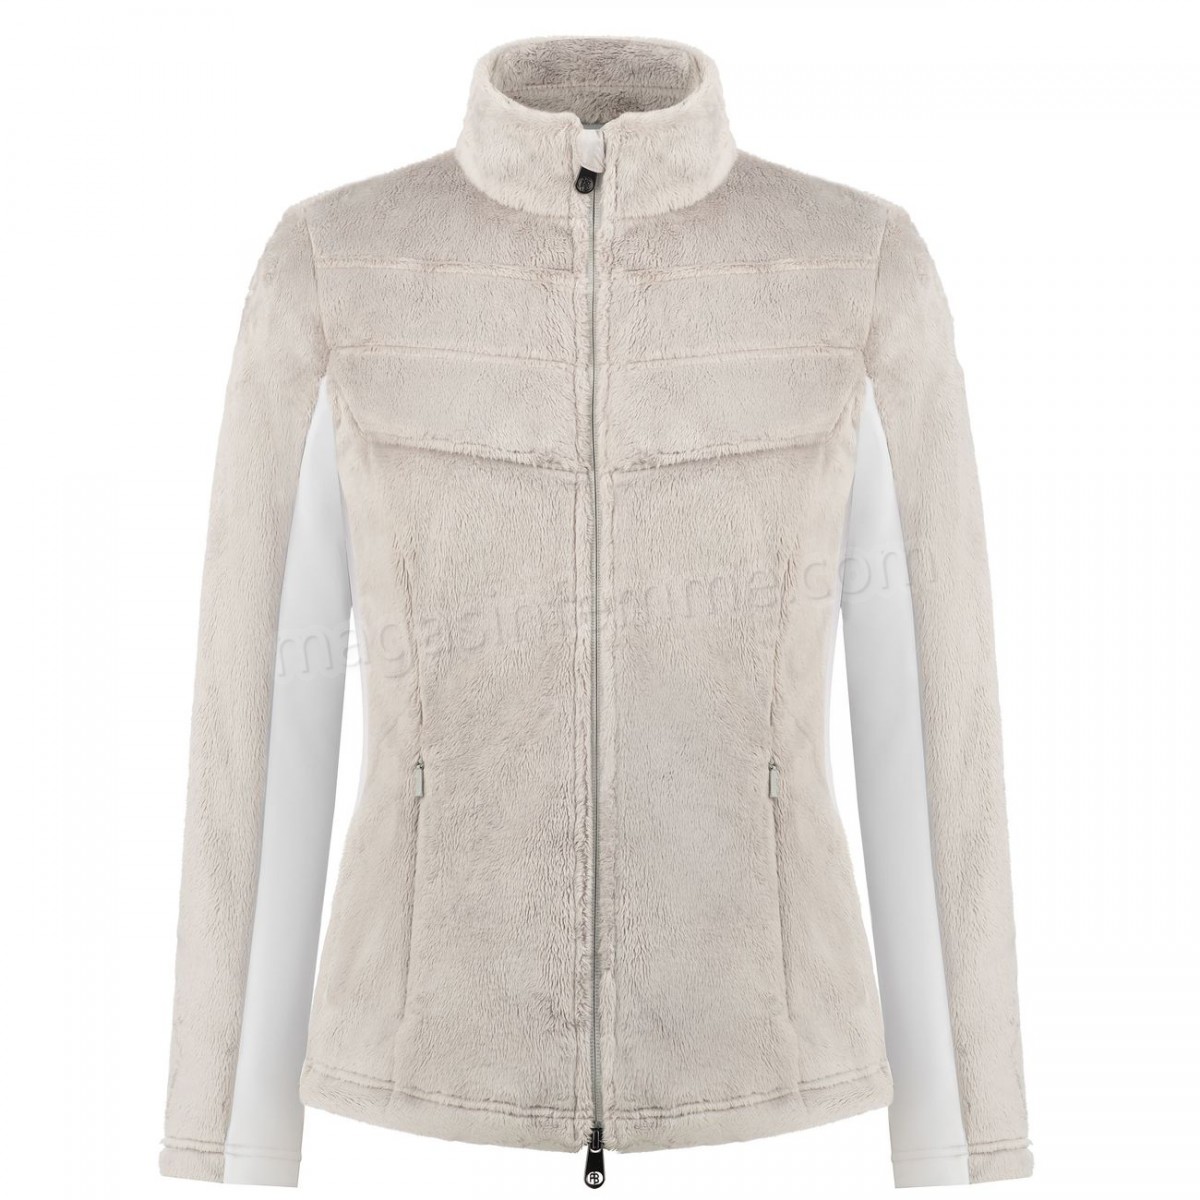 Poivre Blanc-Sports d'hiver femme POIVRE BLANC Polaire Poivre Blanc Long Pile Fleece Jacket 1603 Mineral Grey/white Femme en solde - -1